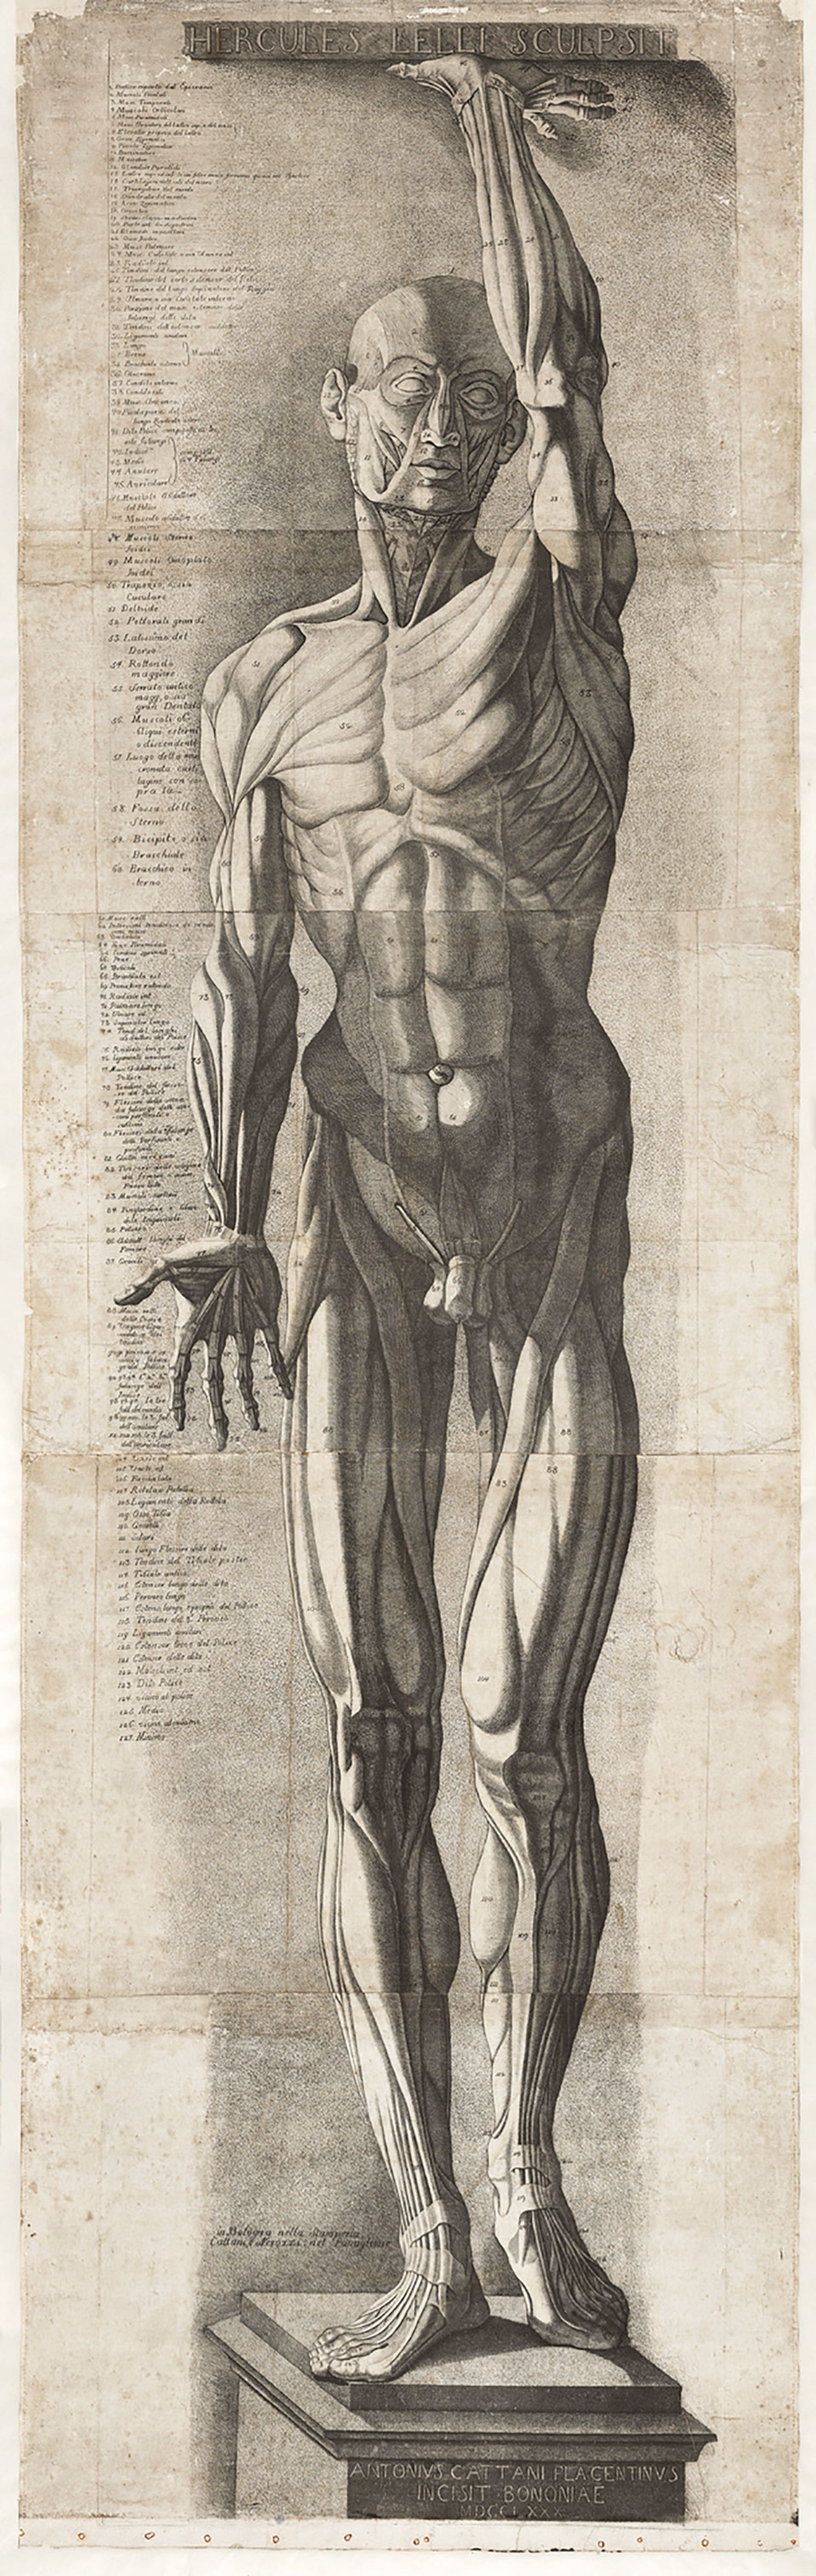 אנטוניו קטאני (1777 - 1790) לאחר ארקול ללי (1702-66), Écorché figure (1780), תחריט וחריטה, מודפס על חמישה גיליונות

מכון המחקר גטי